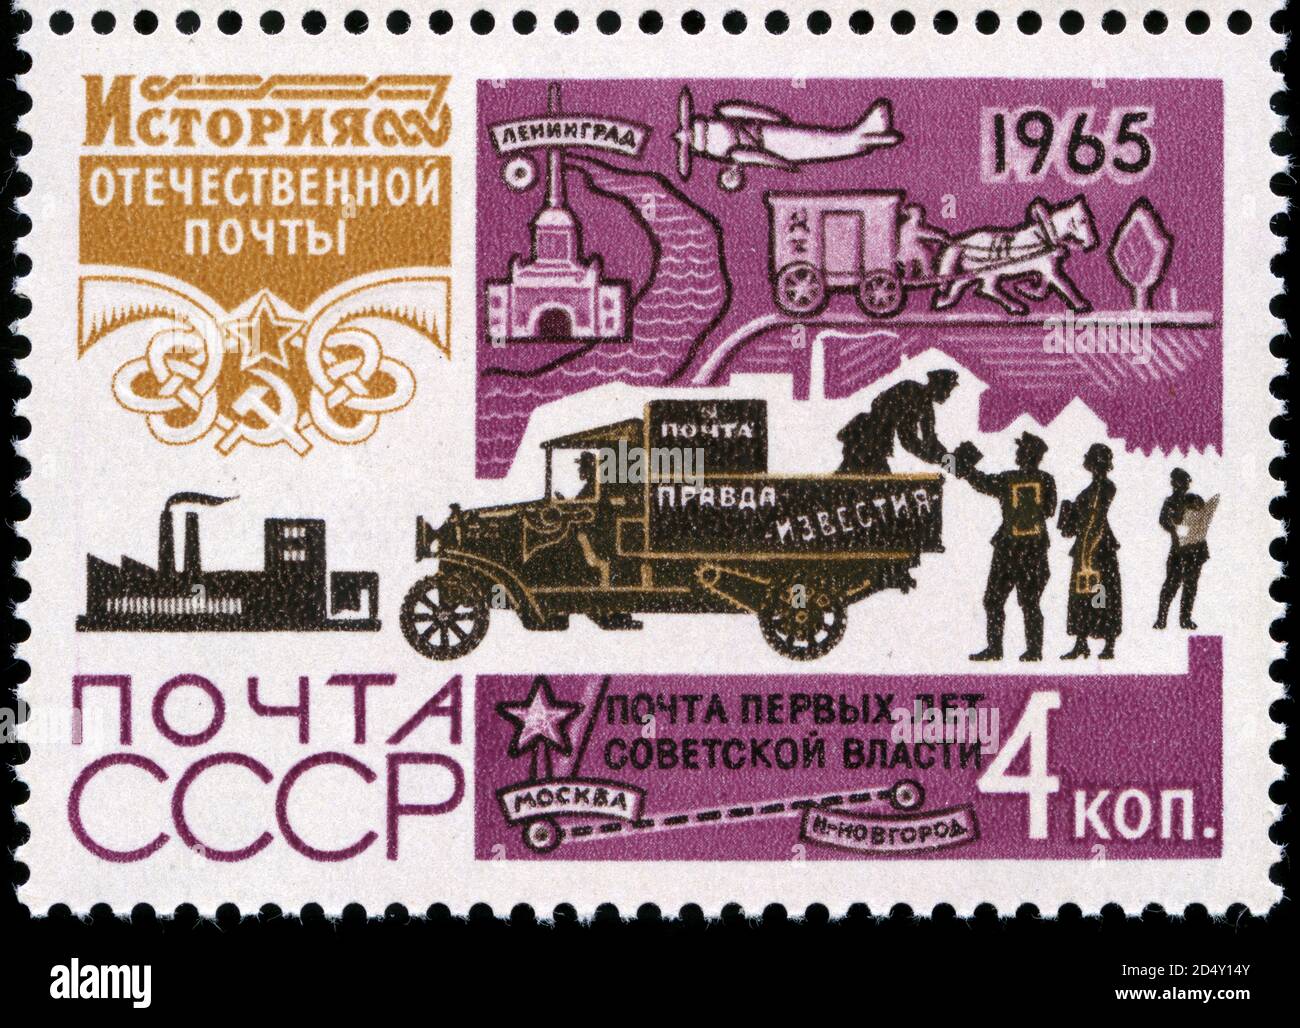 Briefmarke aus der Sowjetunion in der Geschichte von Die russische Postdienstserie, die 1965 herausgegeben wurde Stockfoto